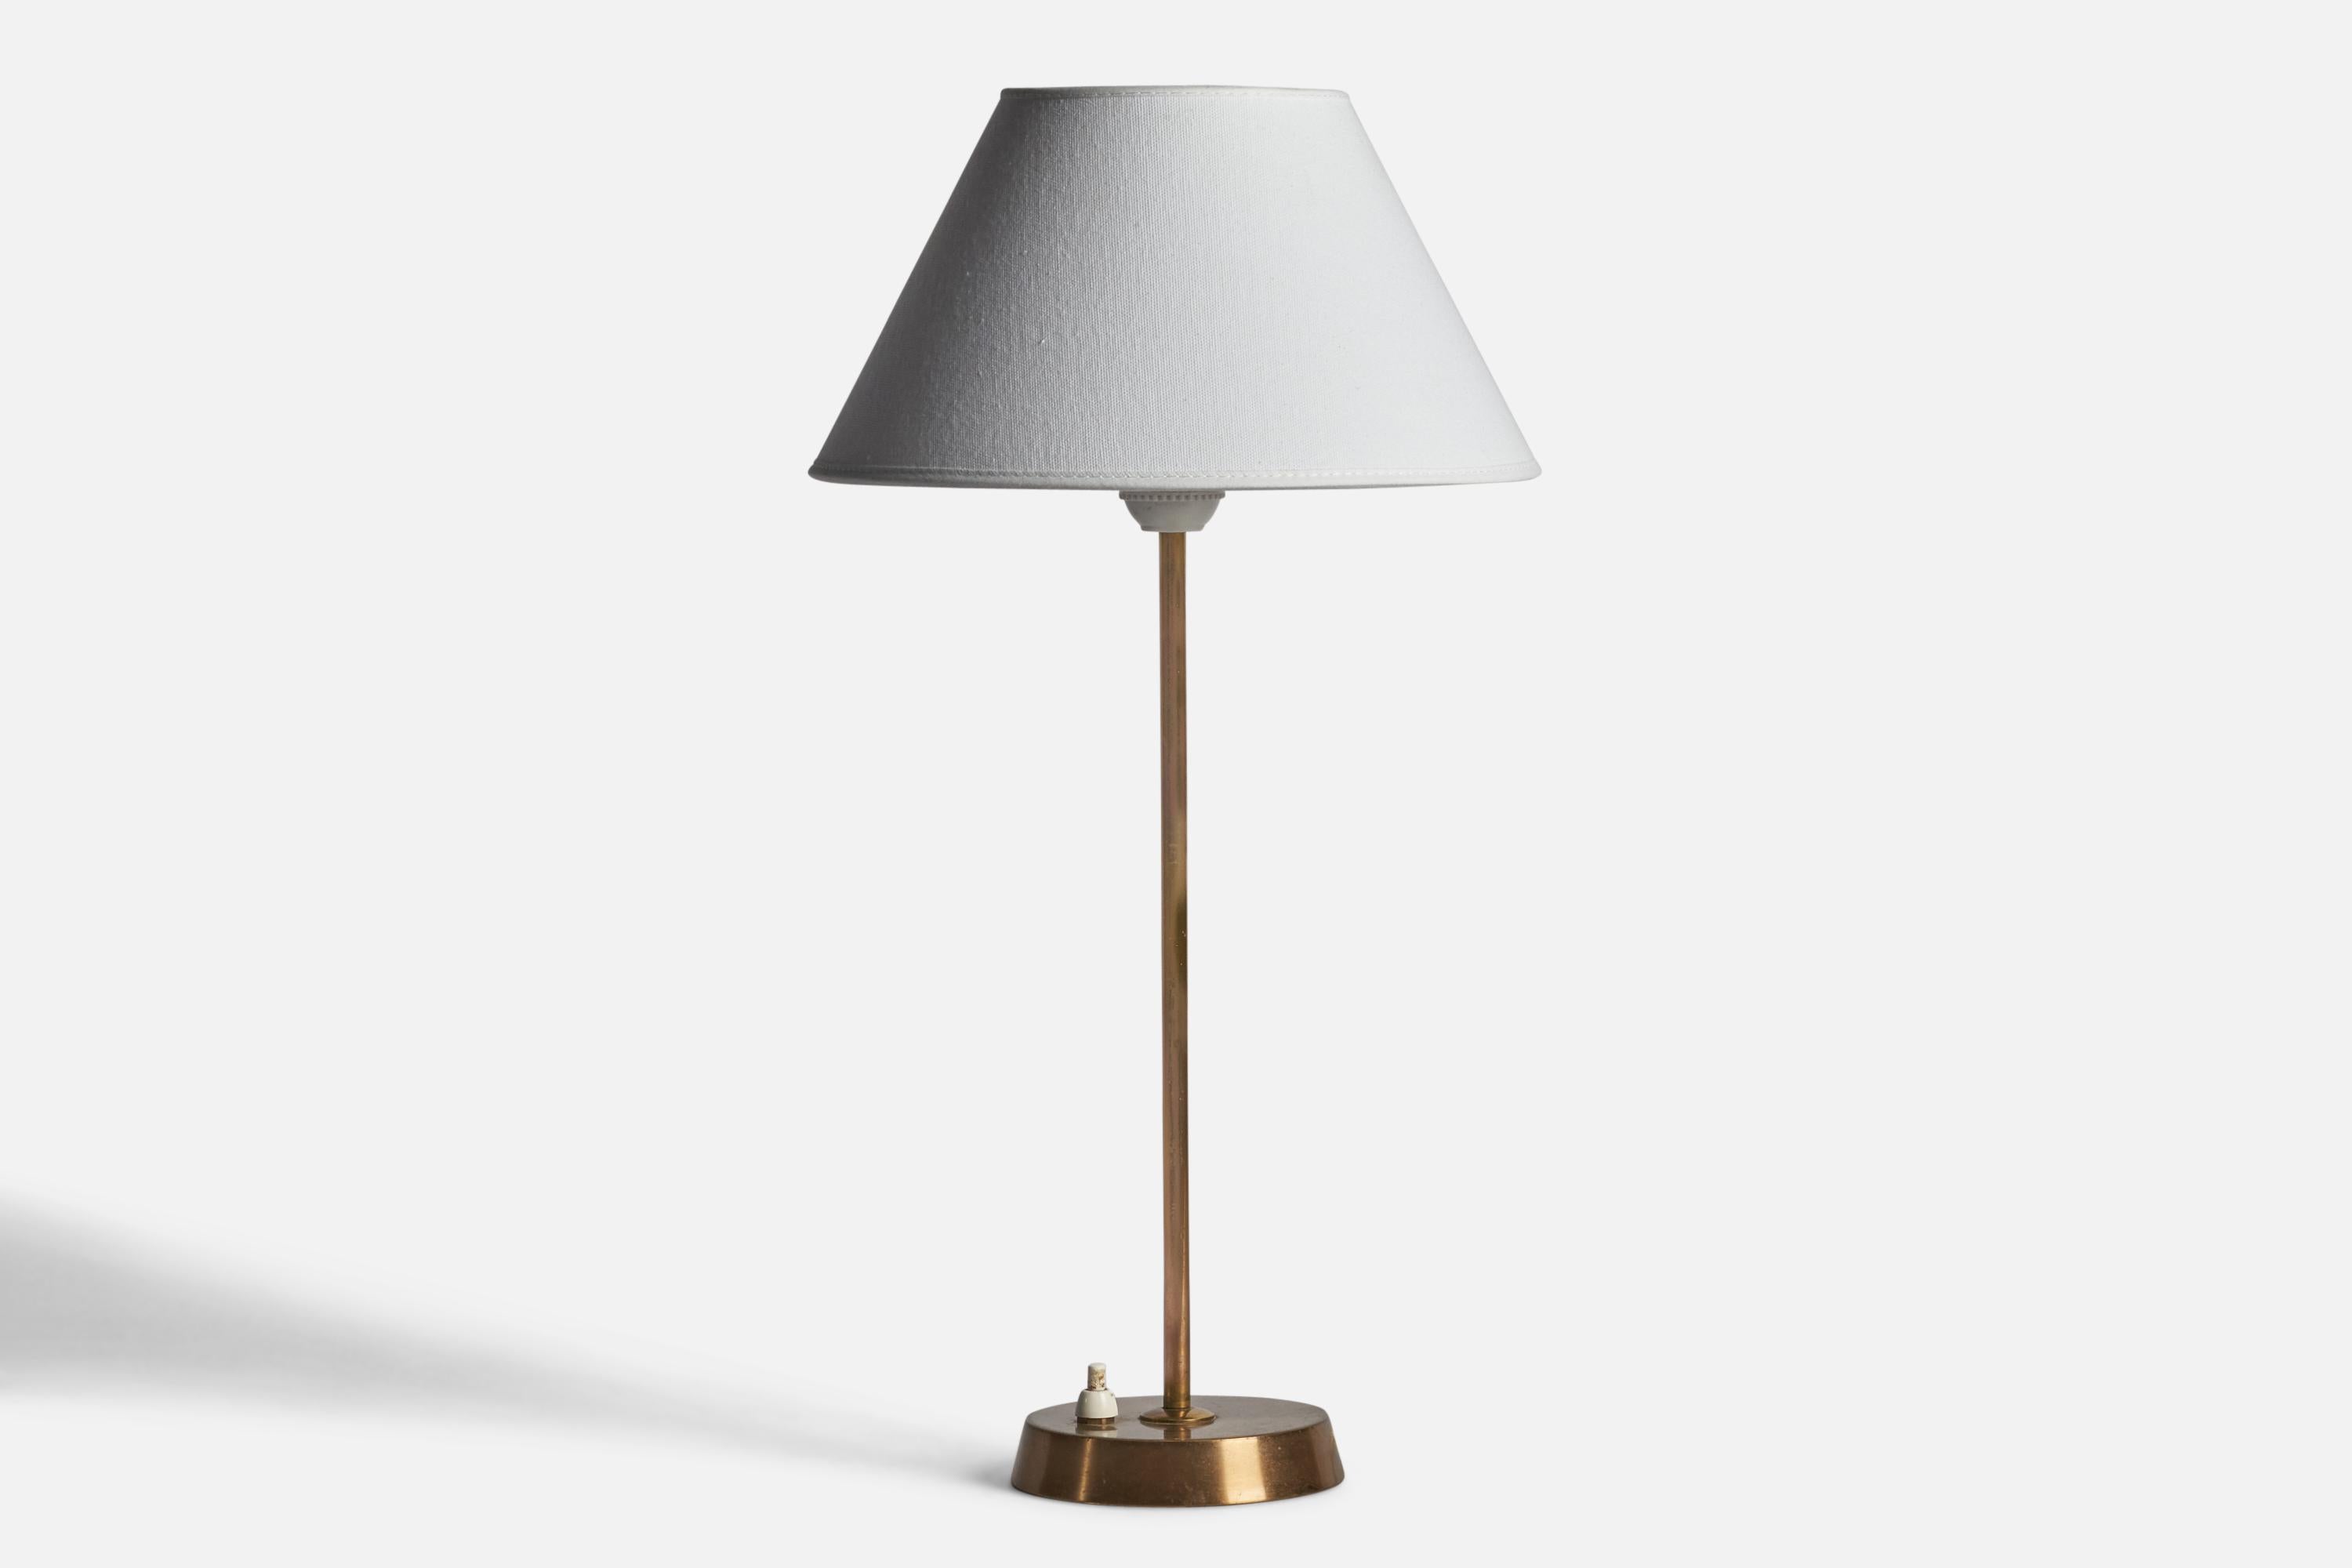 Lampe de table en laiton conçue et produite par EAE, Suède, années 1950.

Dimensions de la lampe (pouces) : 15.45